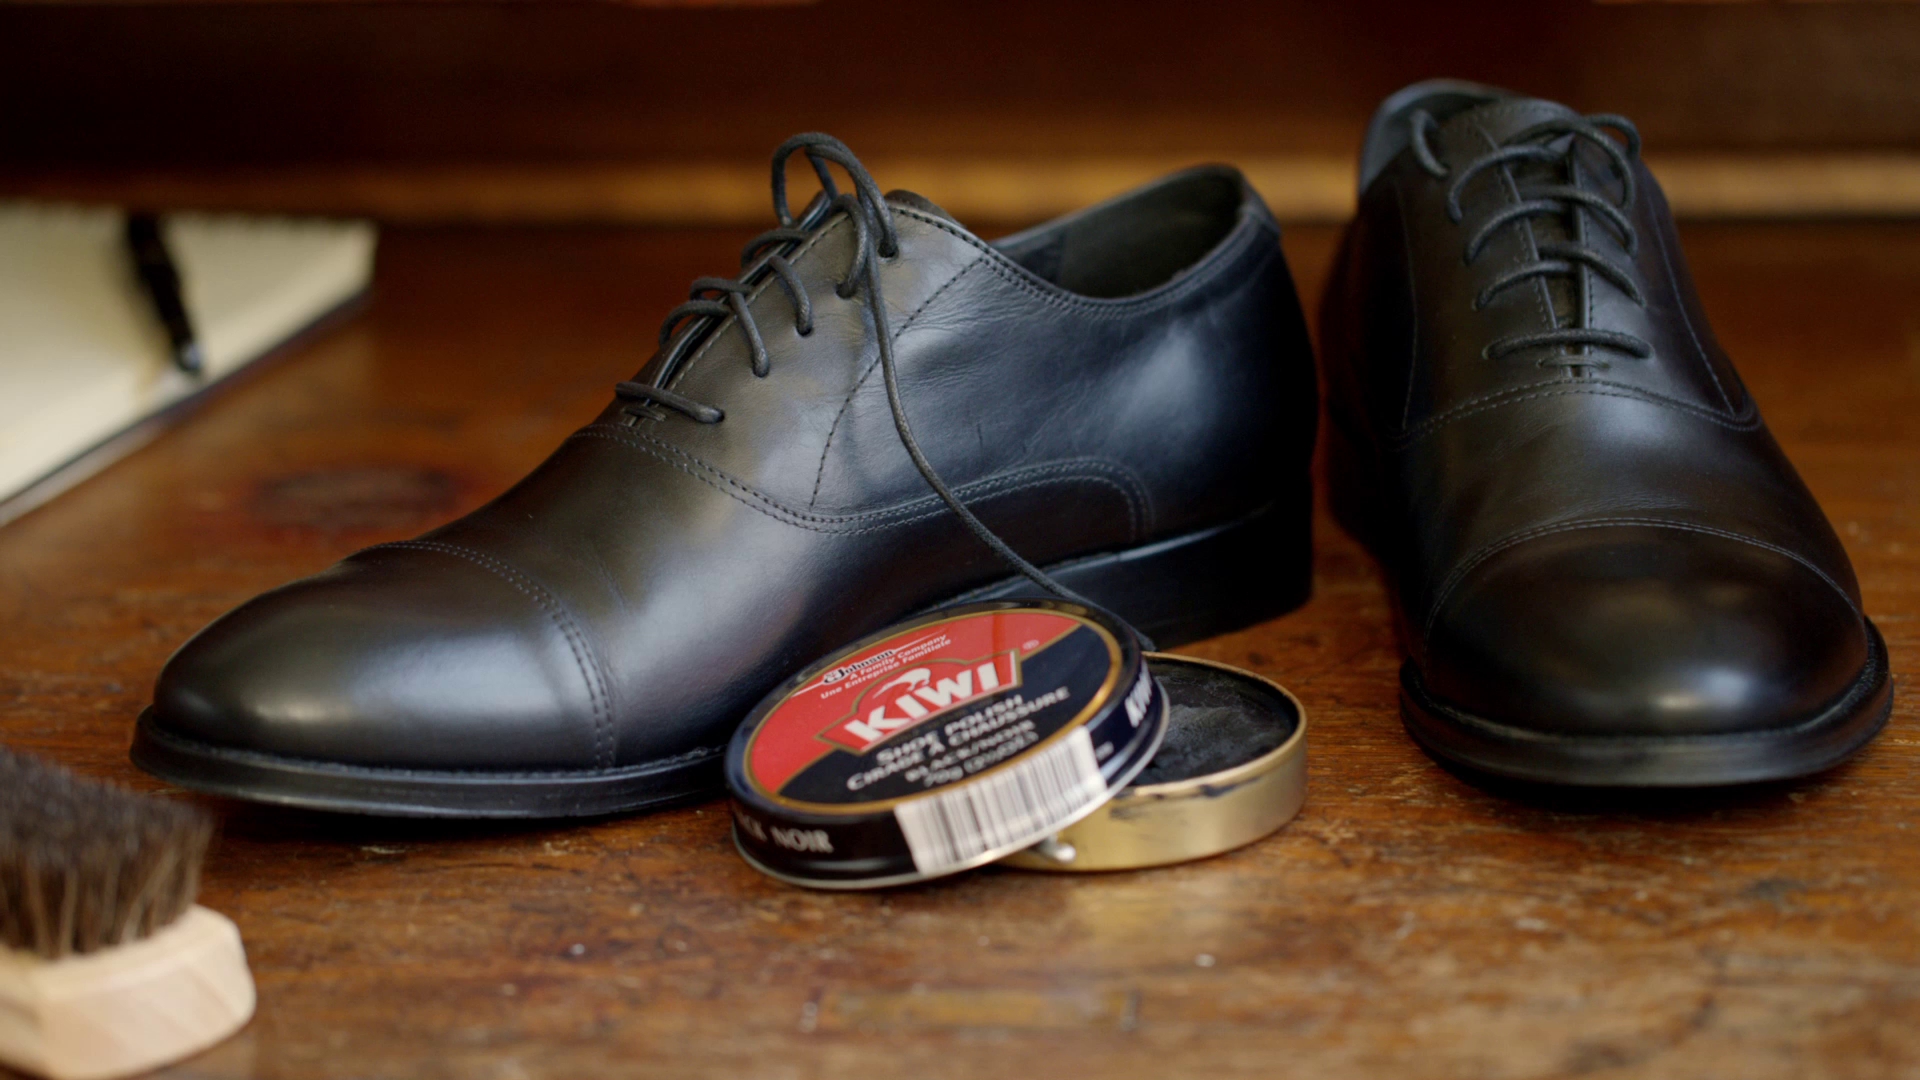 Who makes kiwi shoe polish?